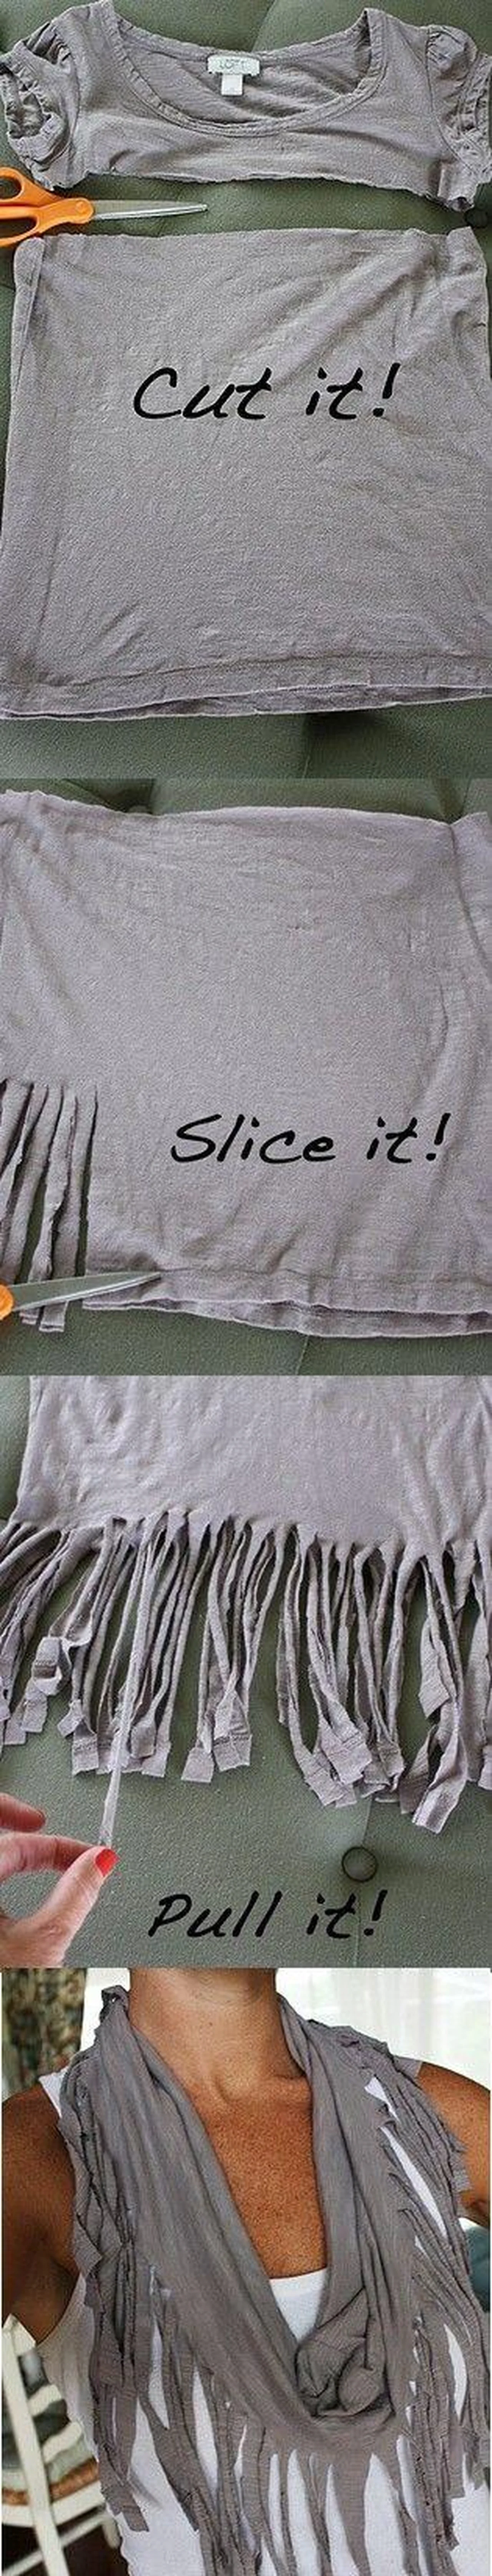 Kreatywny sposób na wykorzystanie starej koszulki